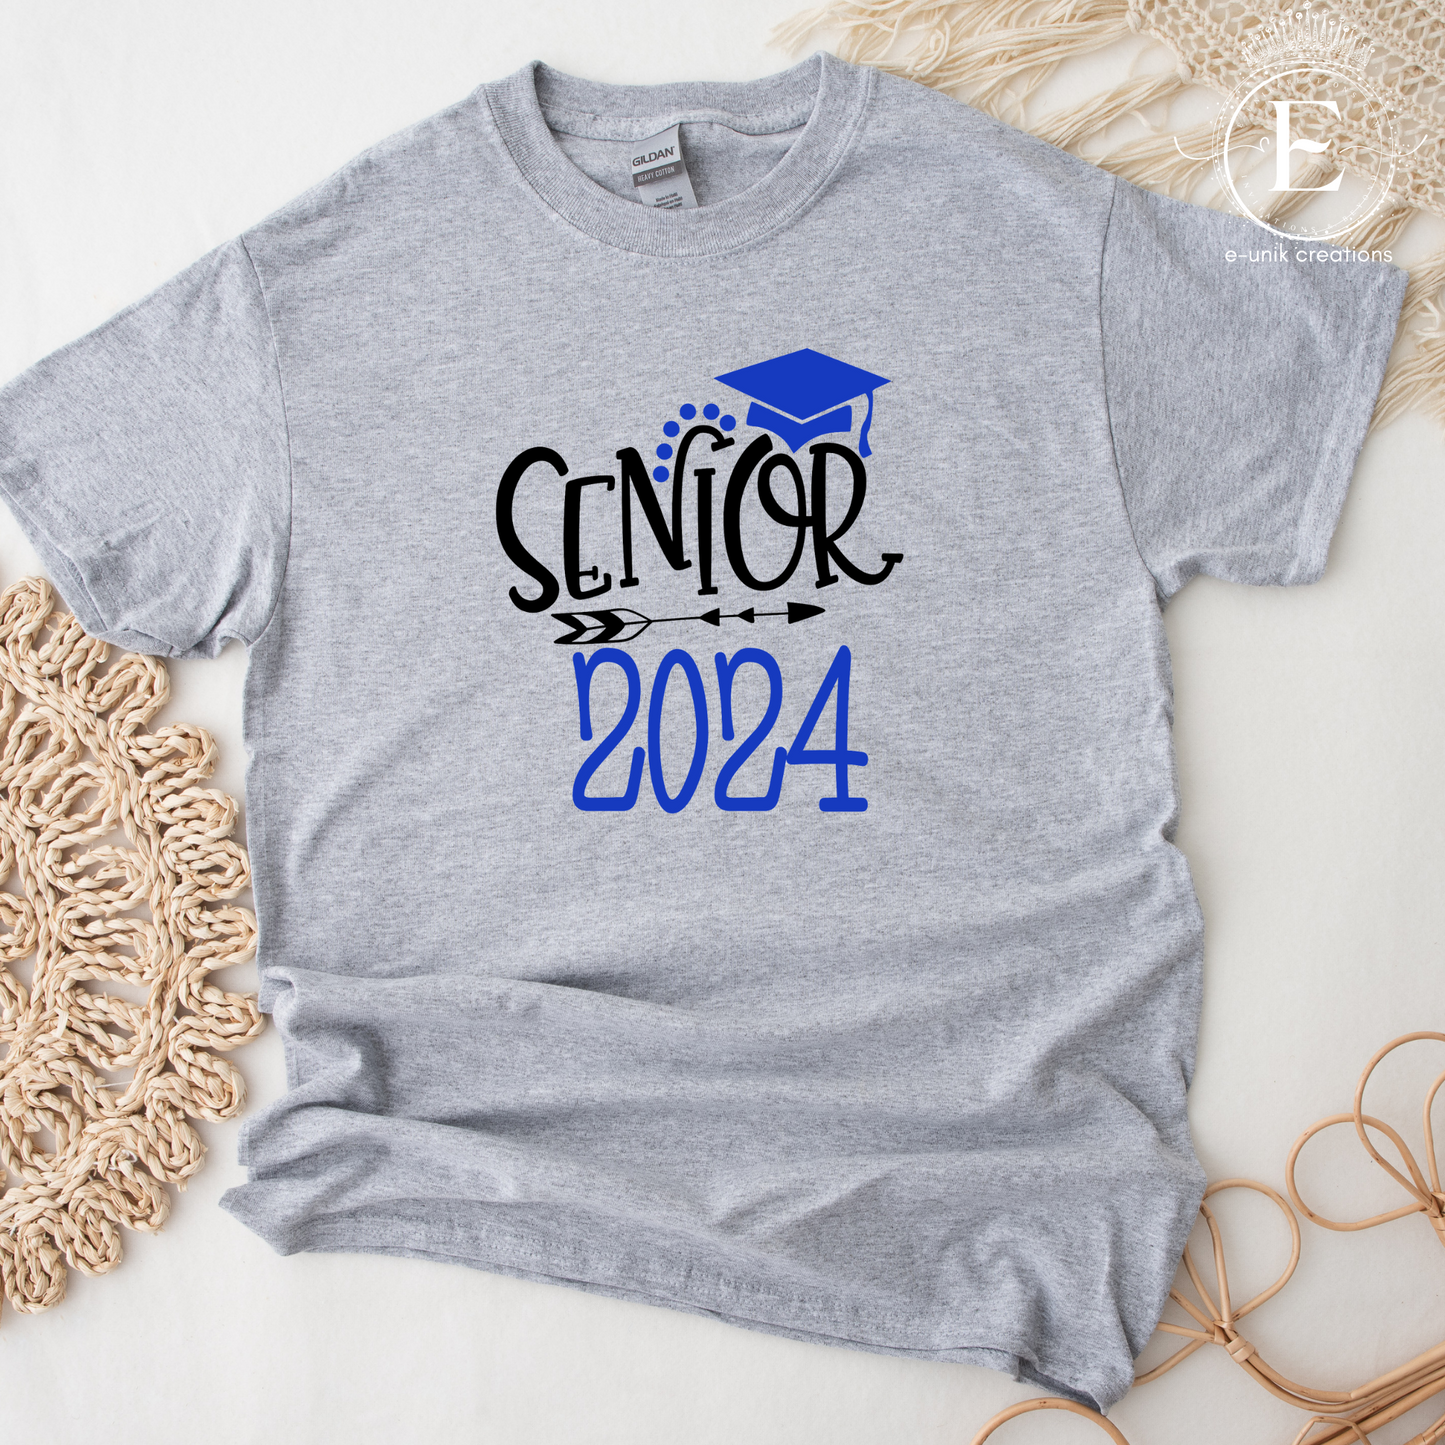 Camiseta de graduación, camiseta de la escuela secundaria, camiseta personalizada - camiseta de graduación unisex